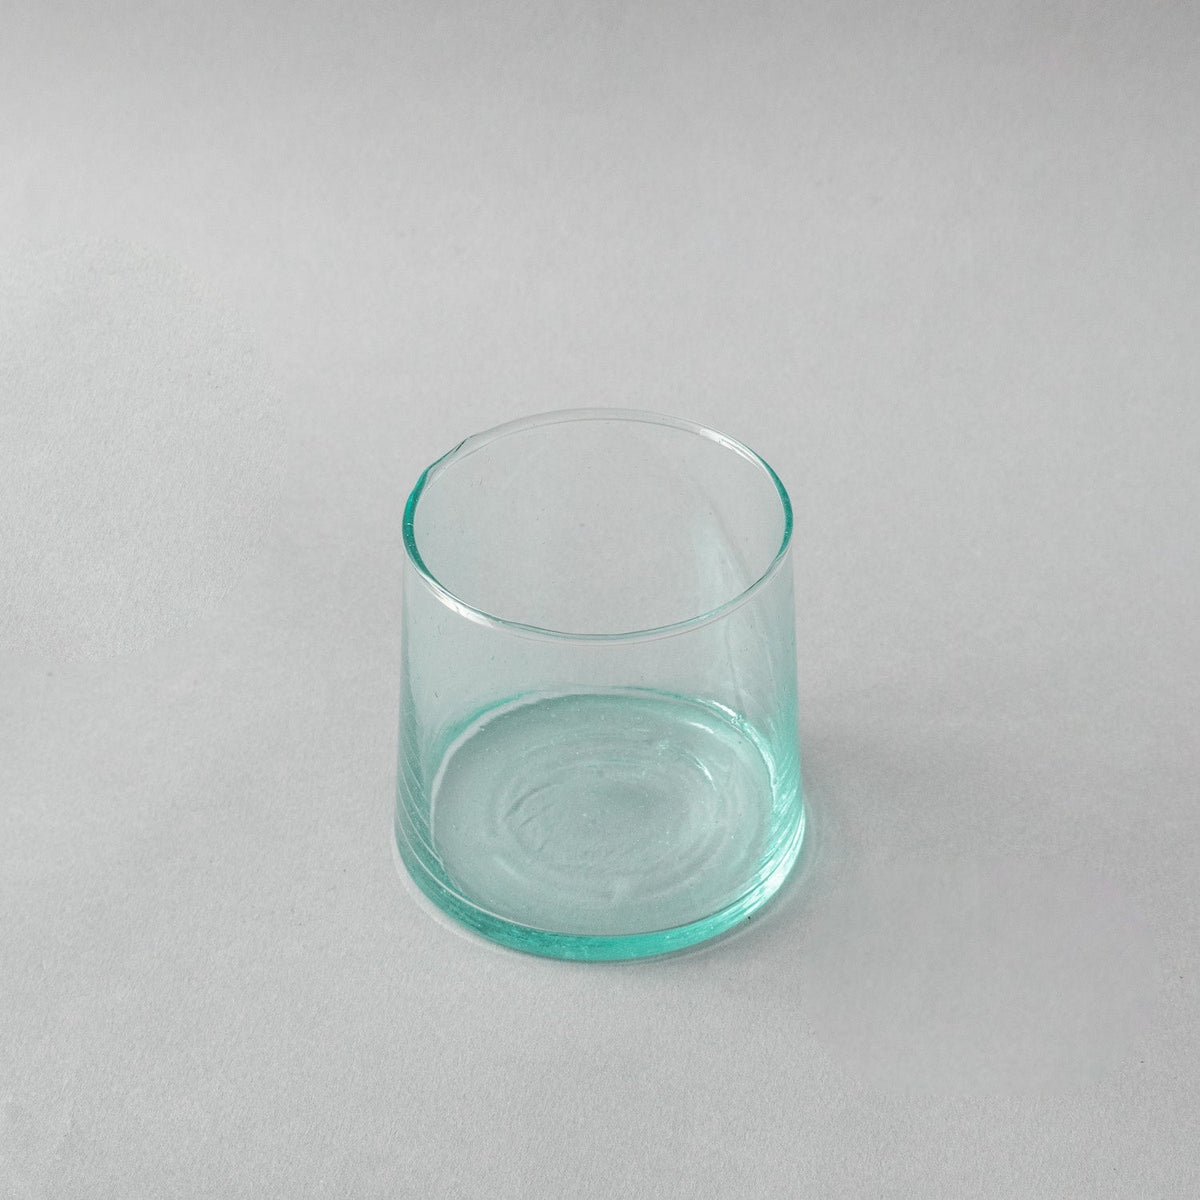 Marrakech Made - Moroccan Glass, Short